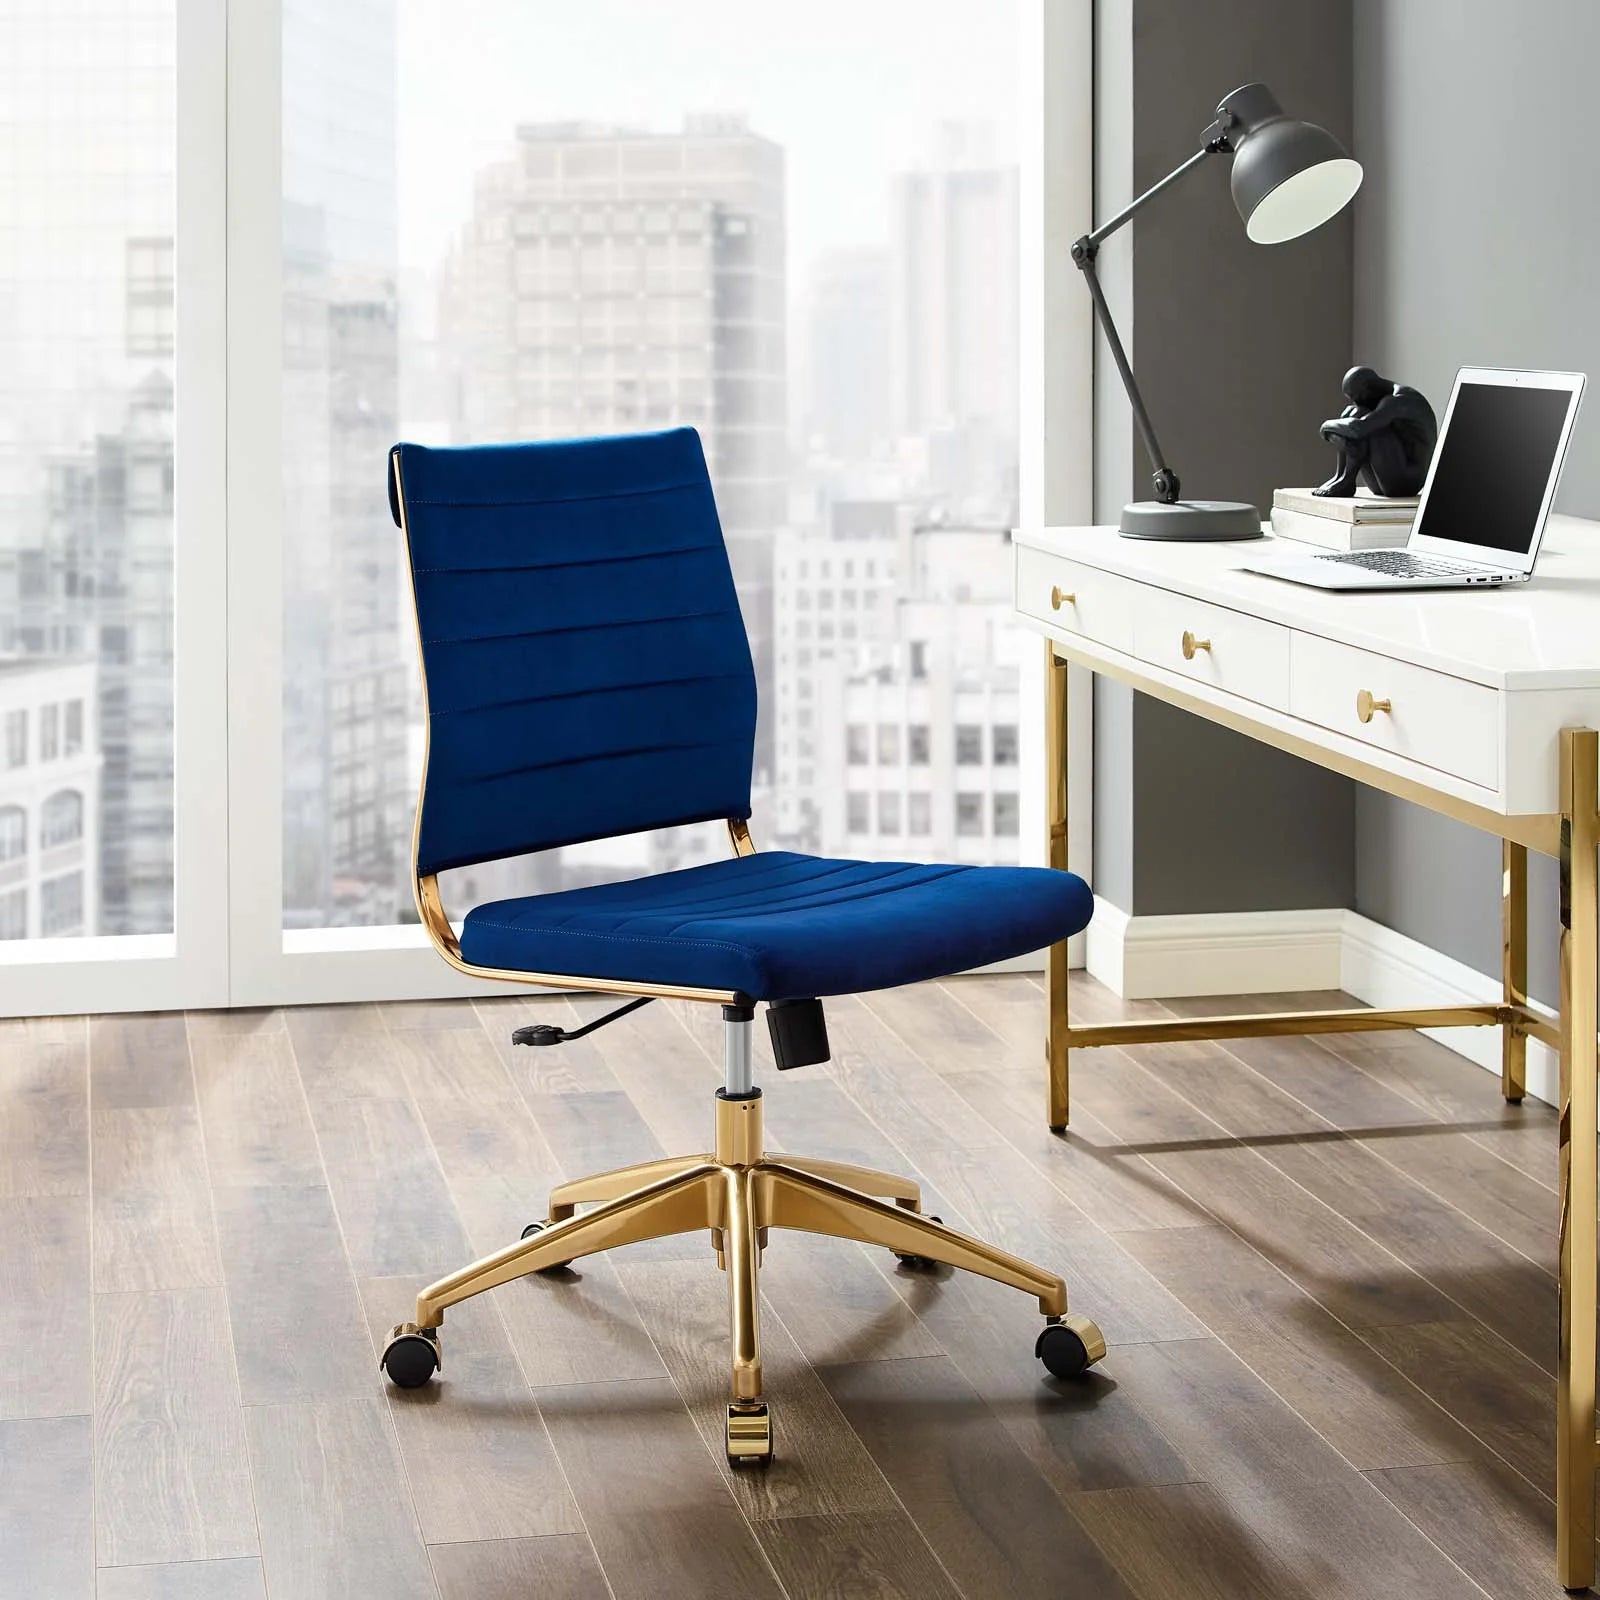 Silla para escritorio moderna sin descansabrazos azul con dorado Zoa en una oficina.